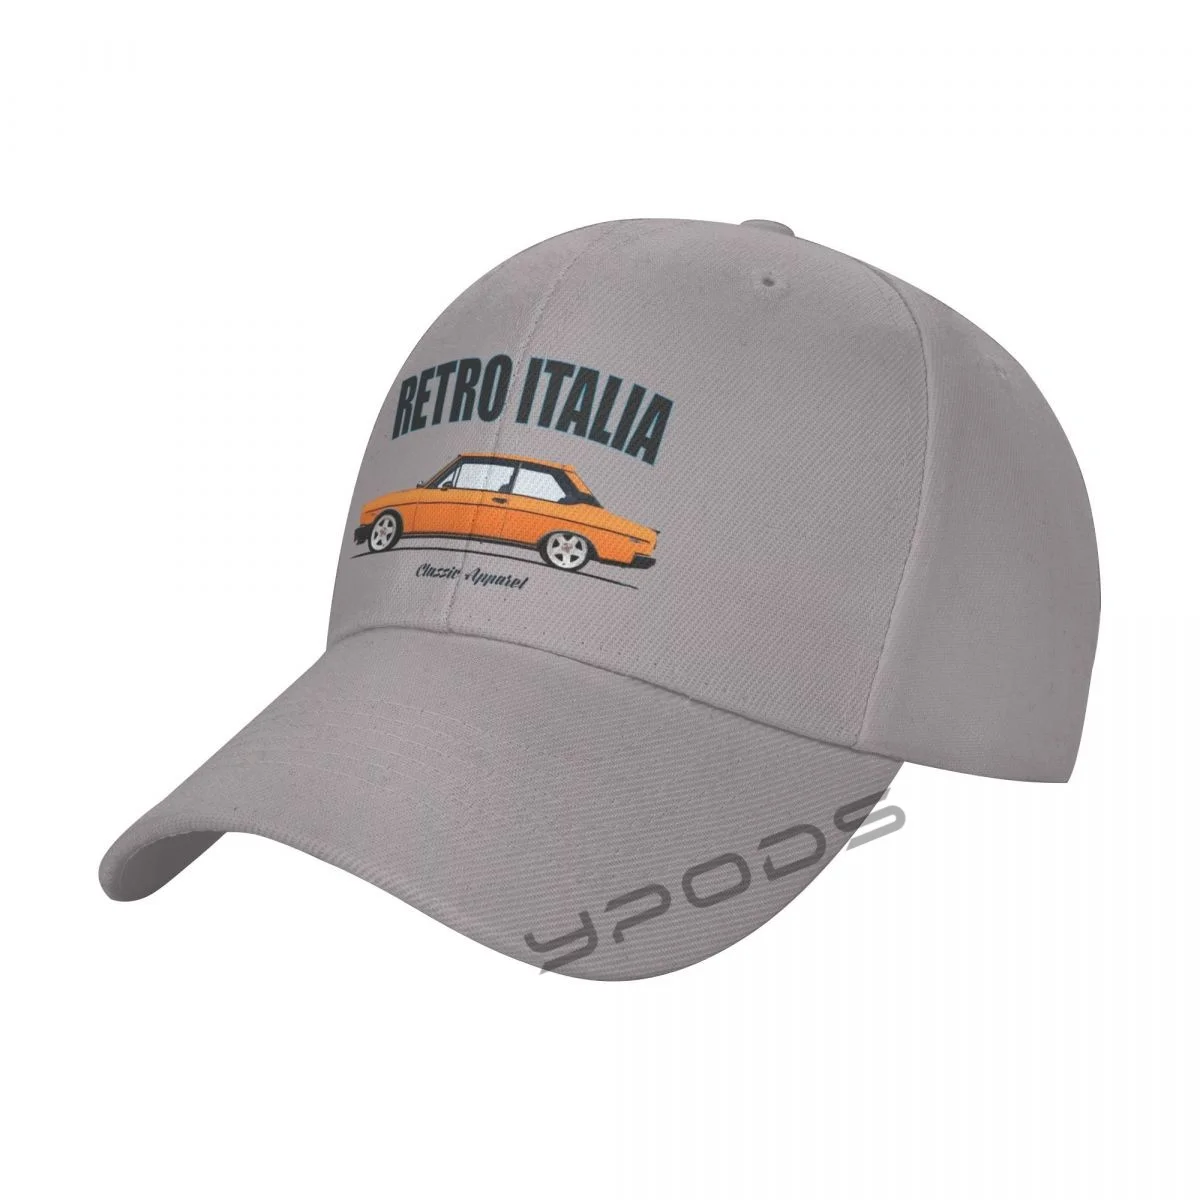 

Men's Baseball Caps FIAT 131 SPORT (RACING) _YT. RETRO ITALIA_YT. CLASSIC CAR Summer Snapback Cap Adjustable Outdoor Sport Hat